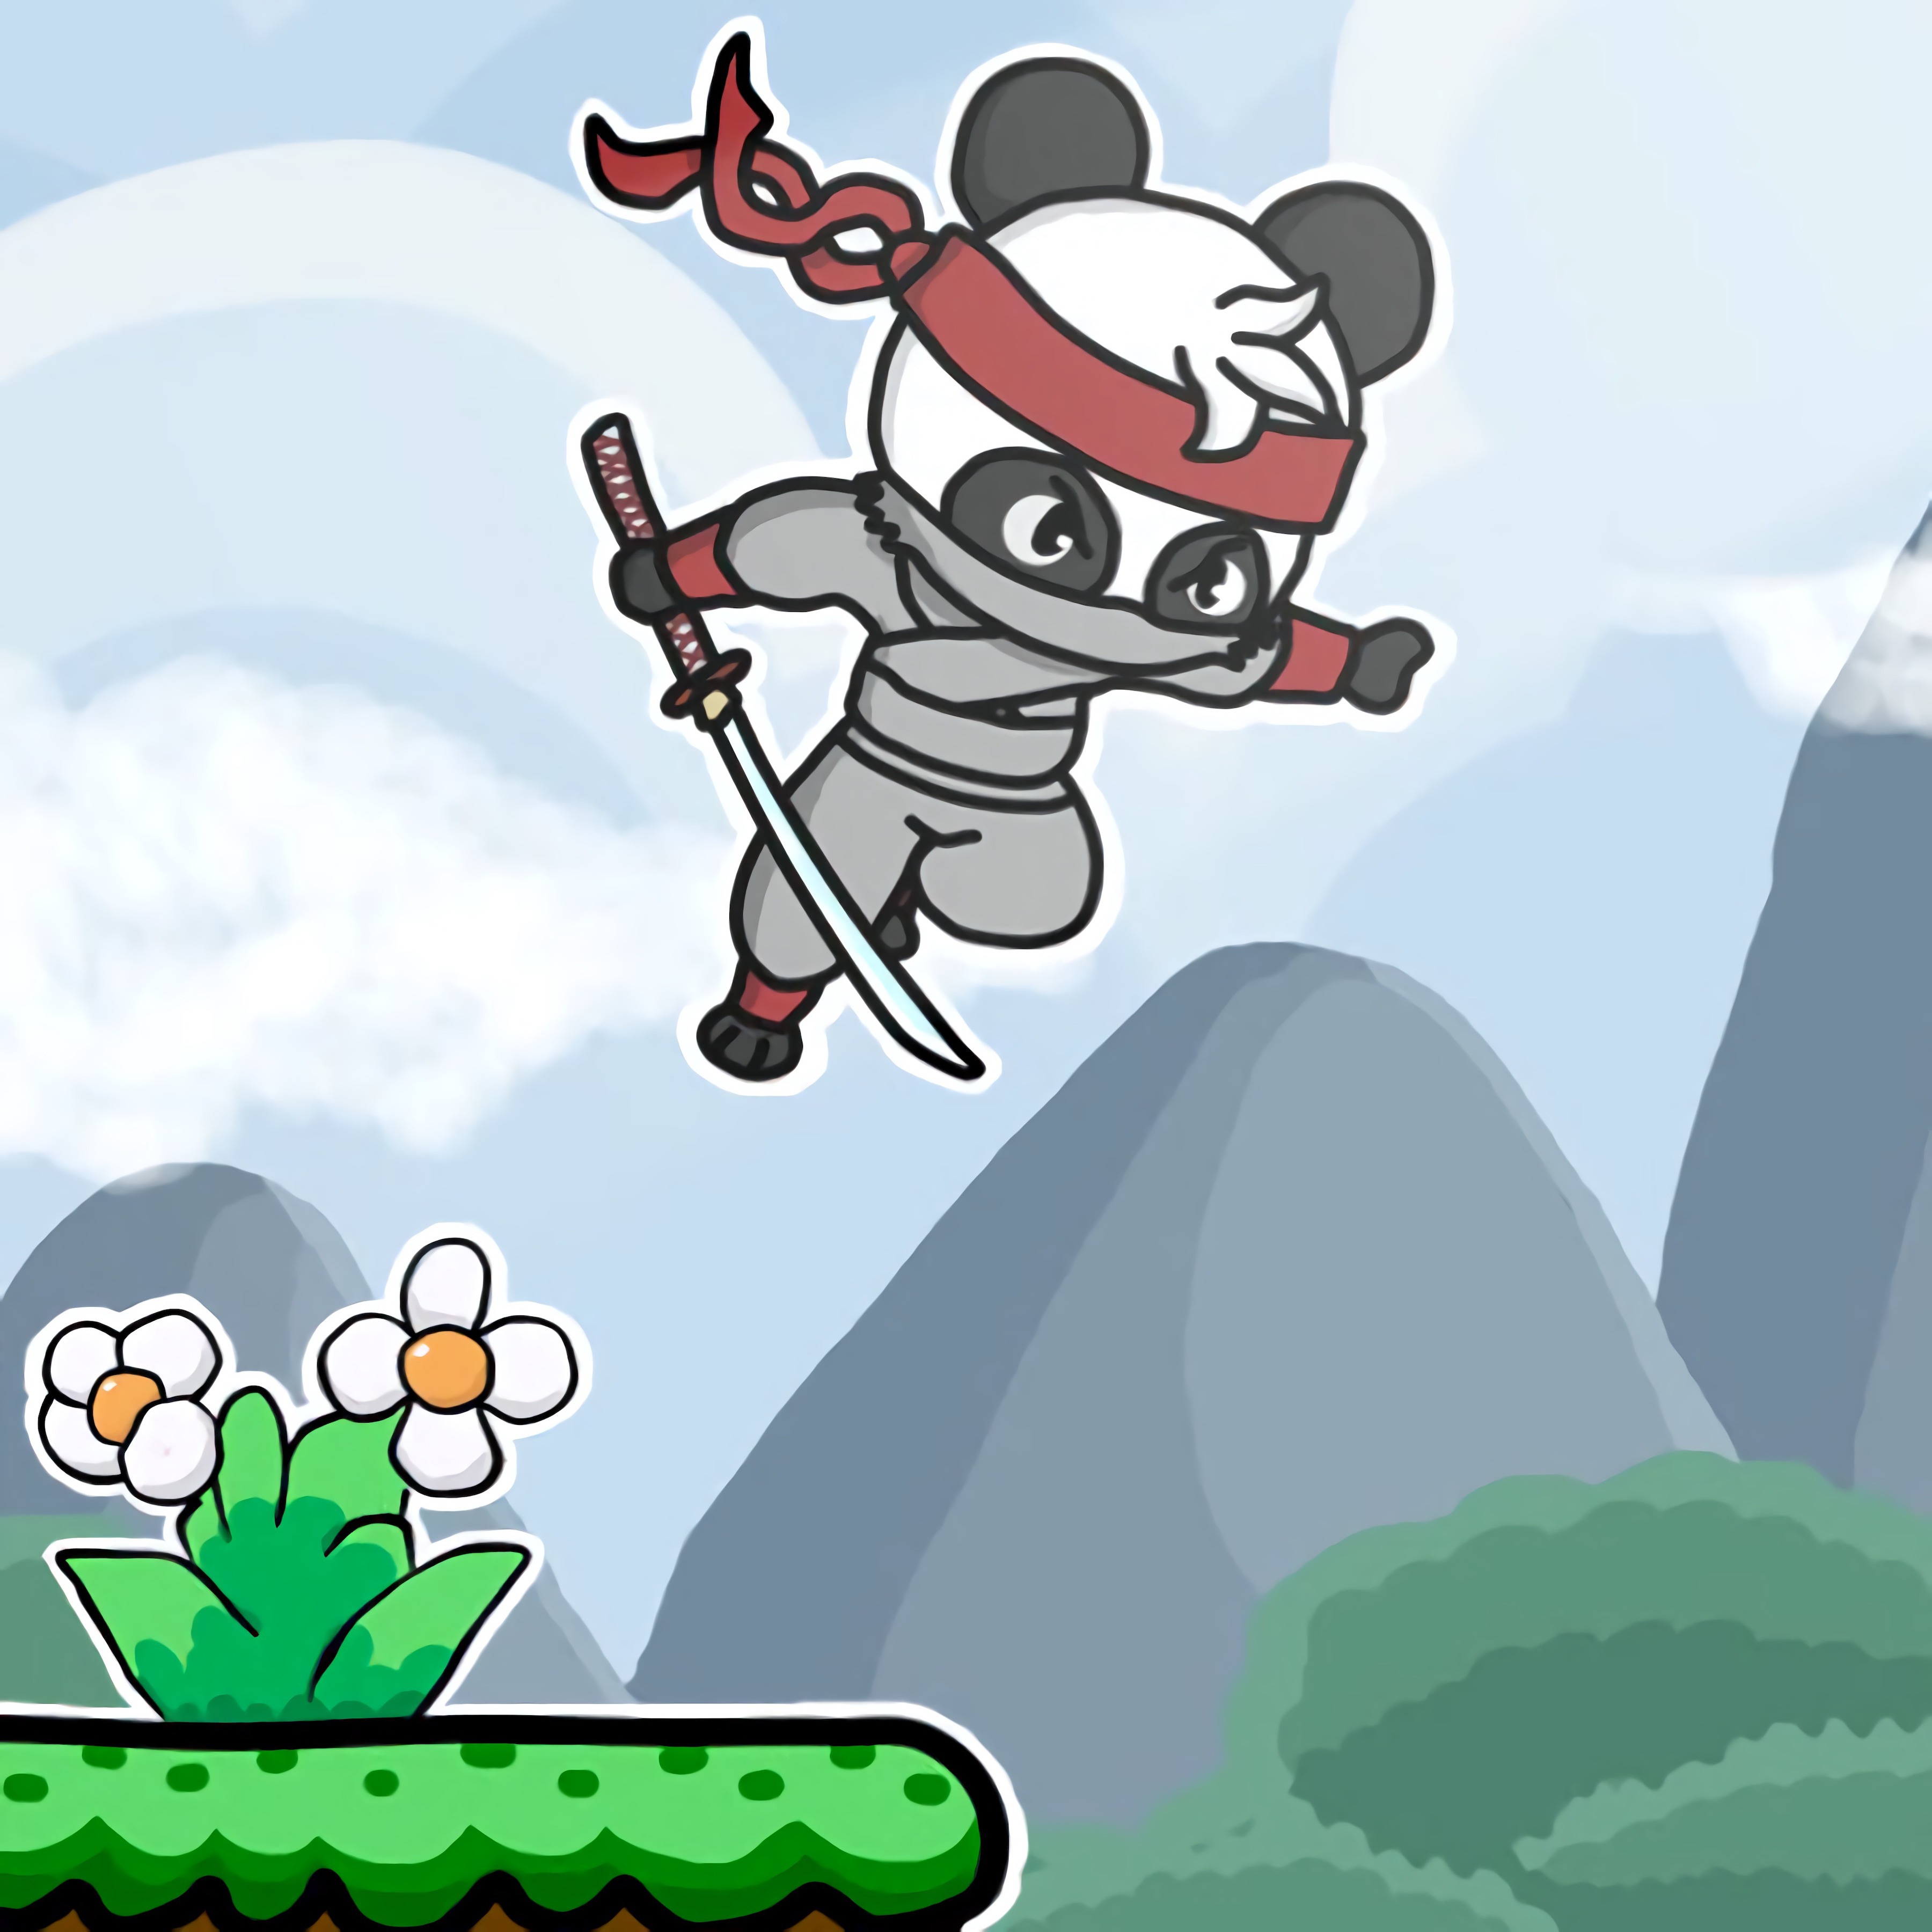 Panda Fight